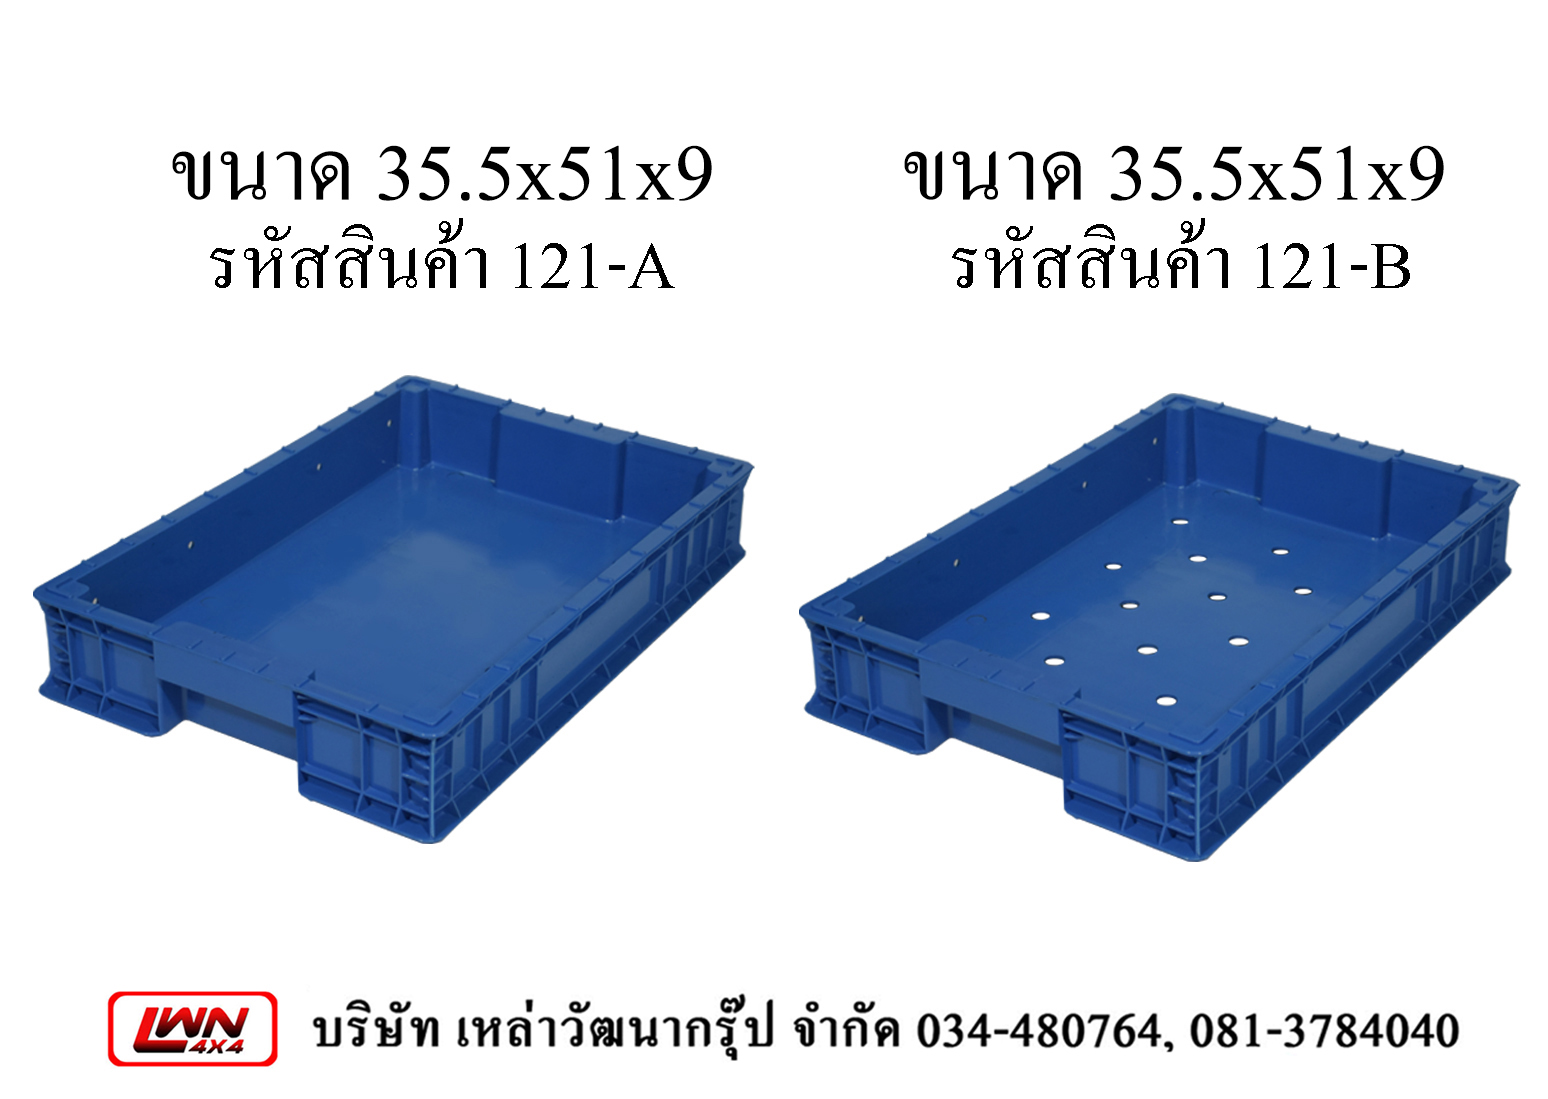 Plastic crate